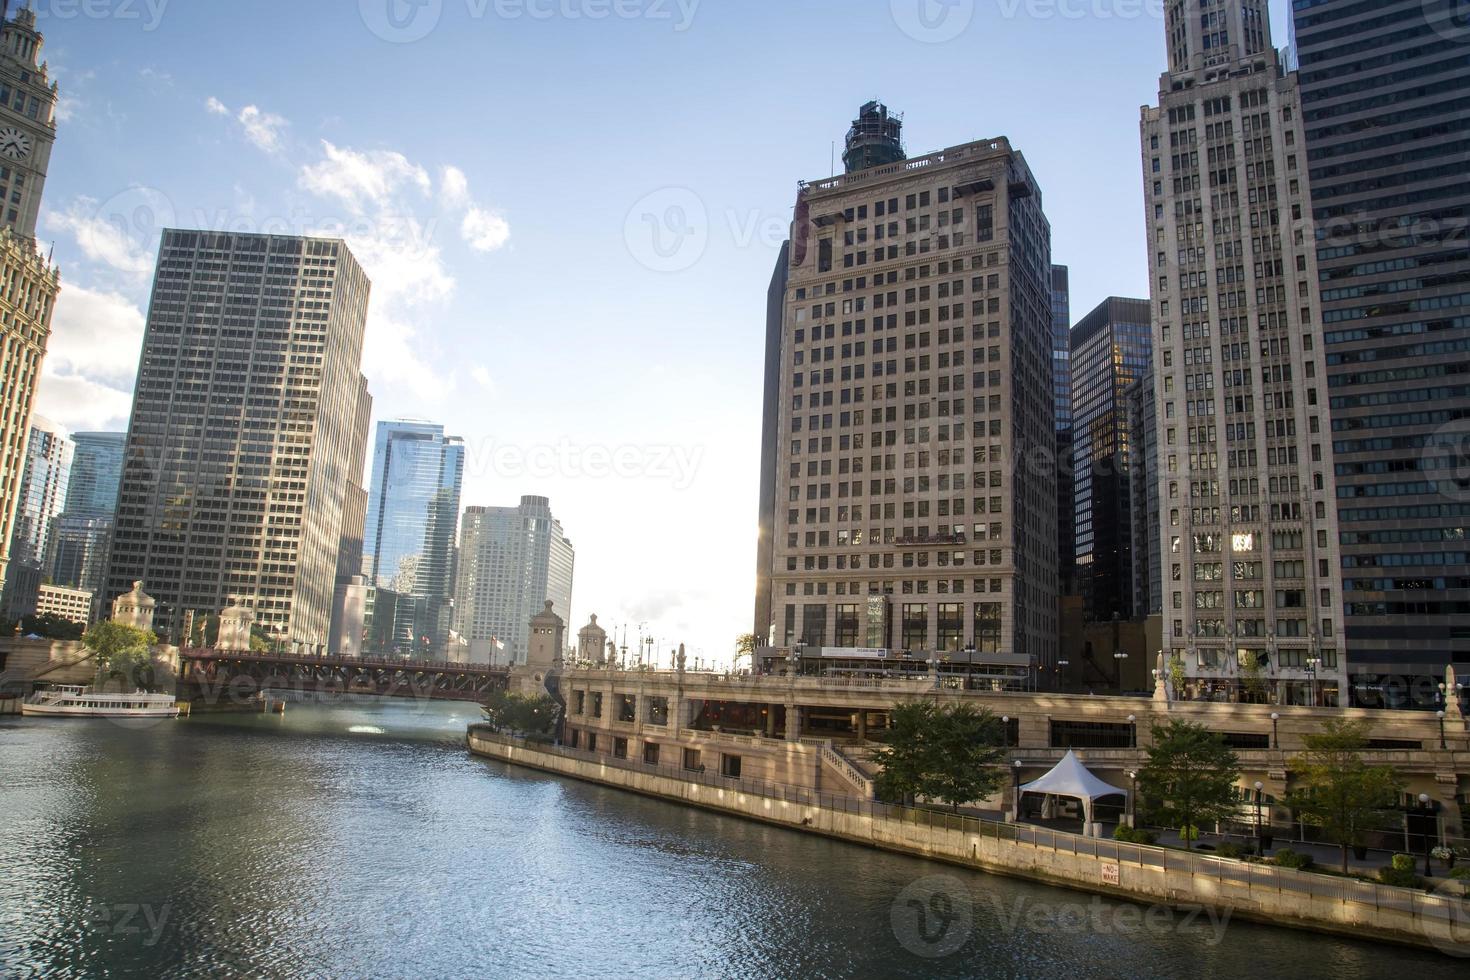 estados unidos - illinois - chicago, horizonte del río chicago foto